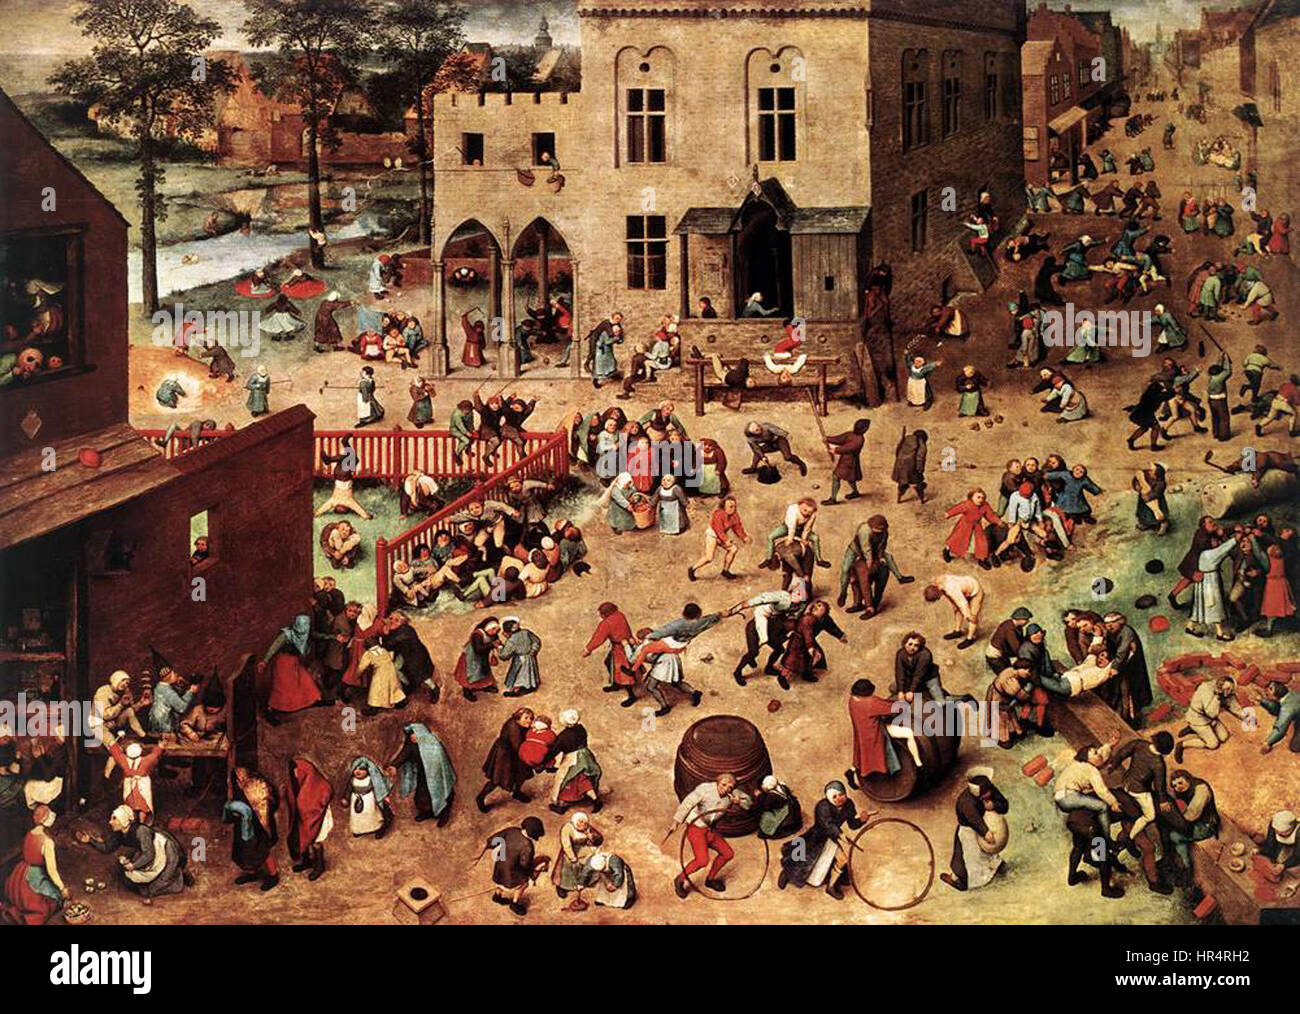 Pieter Bruegel the Elder - Children's Games - WGA3343 Stock Photo